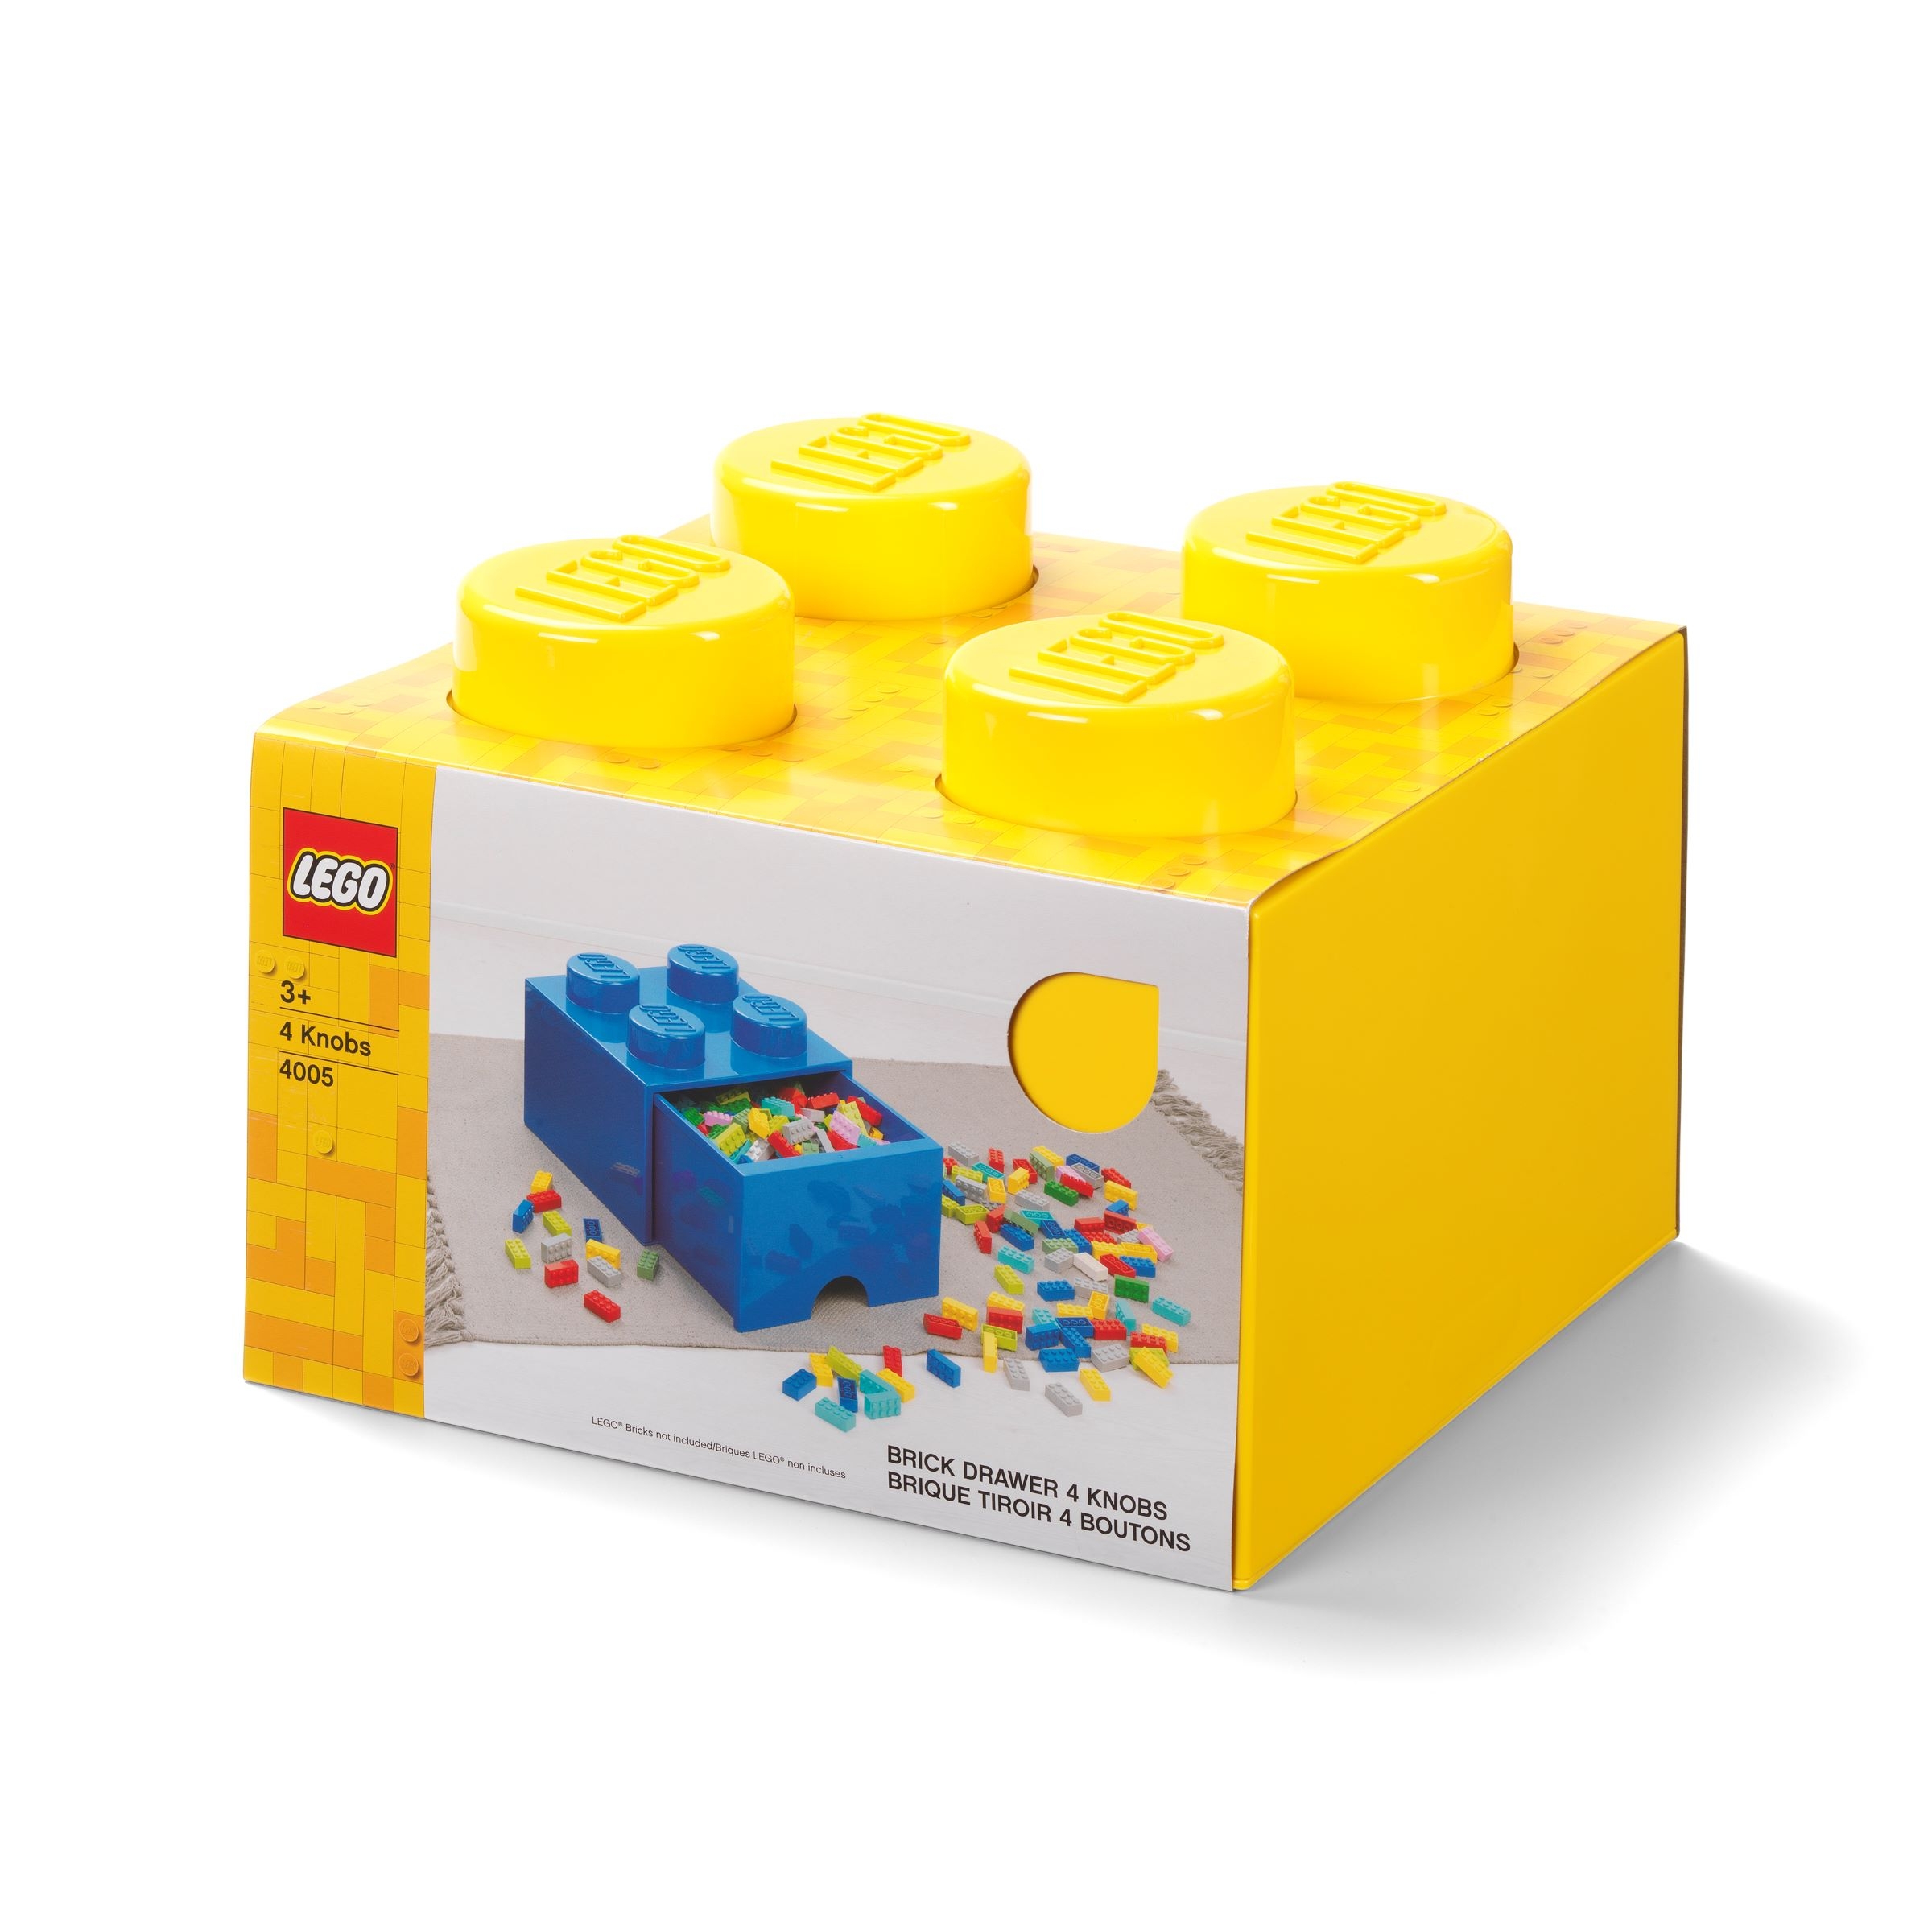 Porte clé en brique Lego® - Jaune